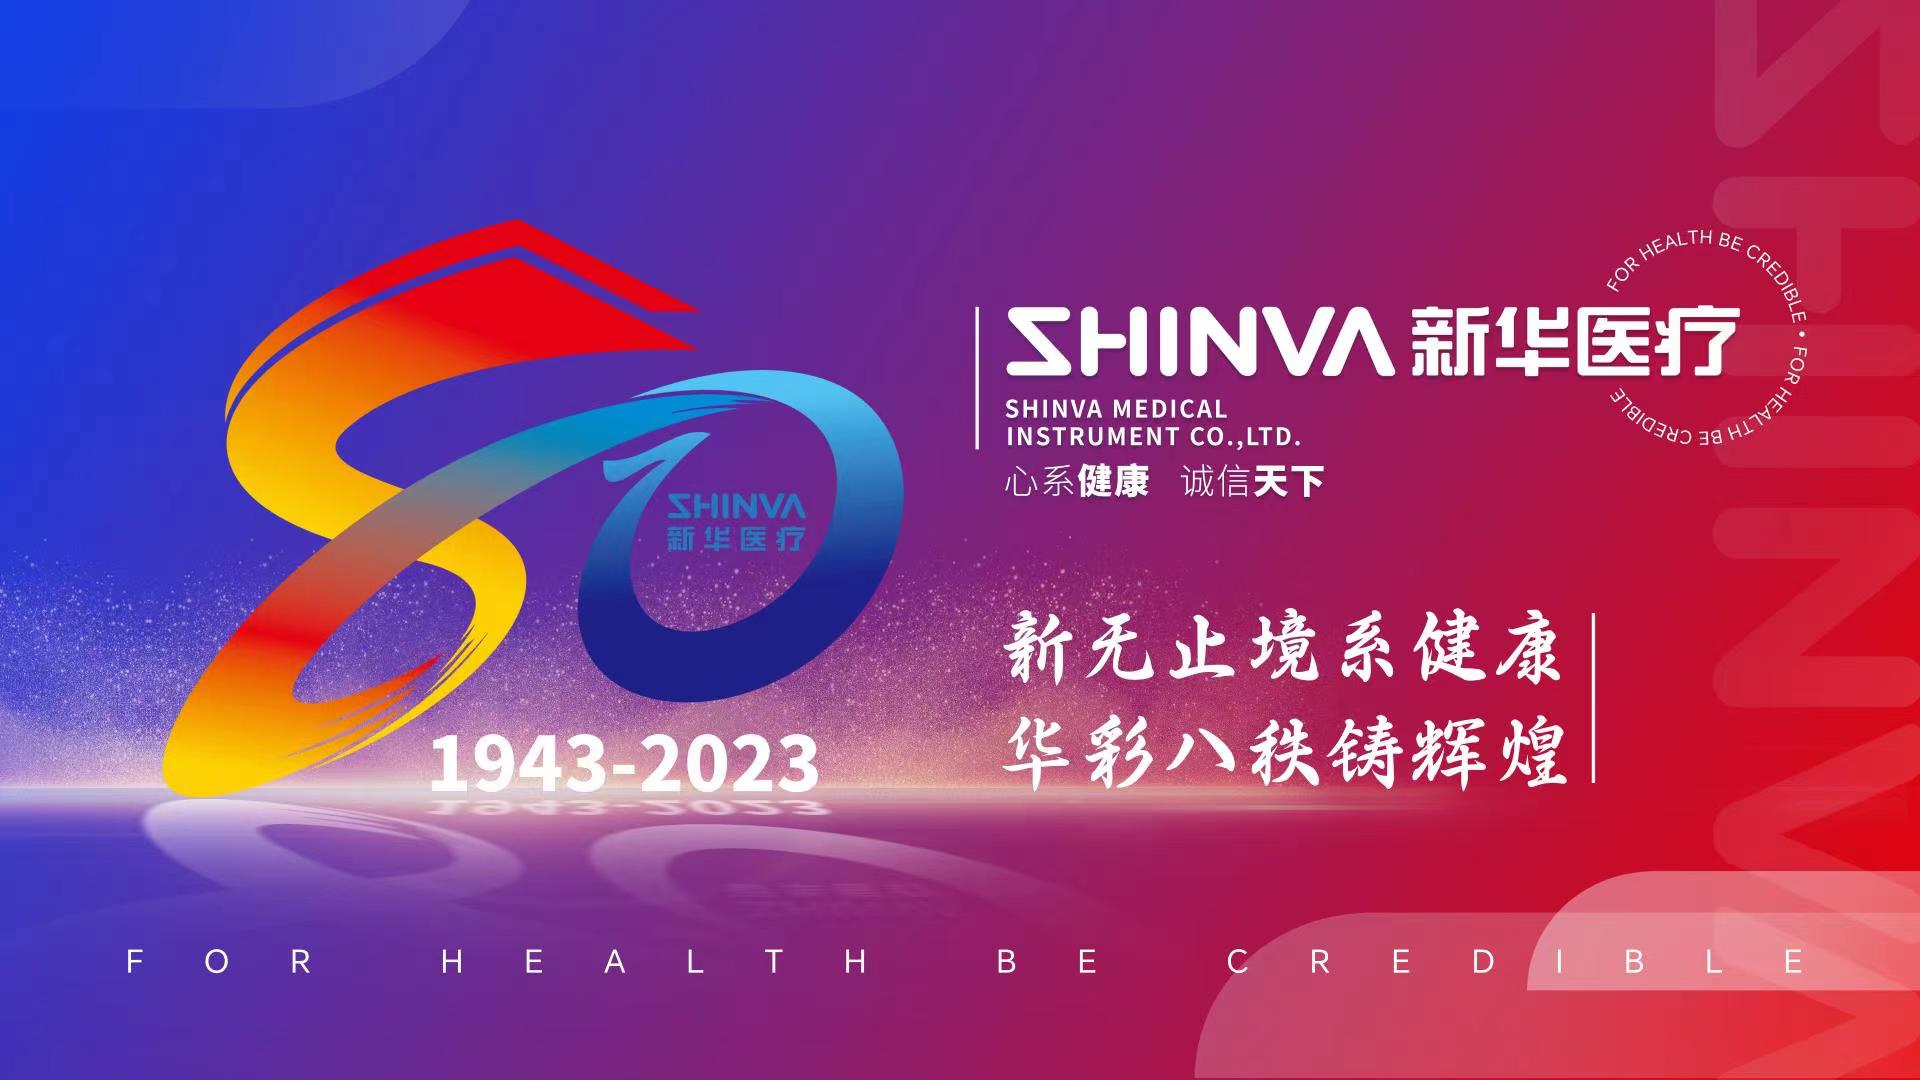 山東新華醫療器械股份有限公司創建80周年